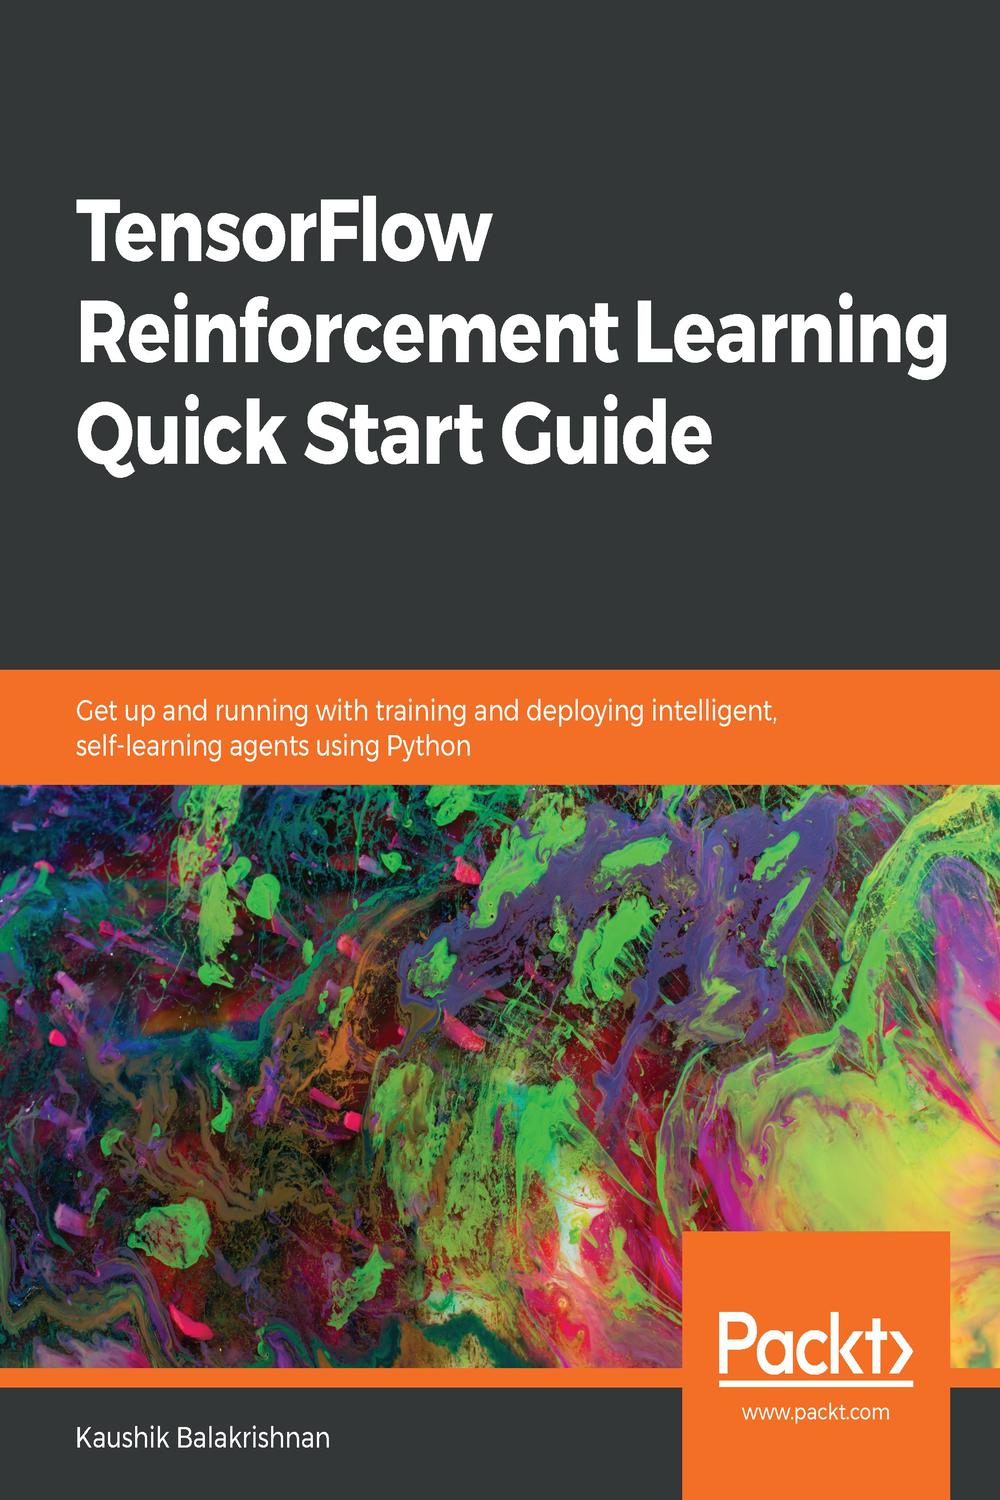 TensorFlow Reinforcement Learning Quick Start Guide - Kaushik Balakrishnan